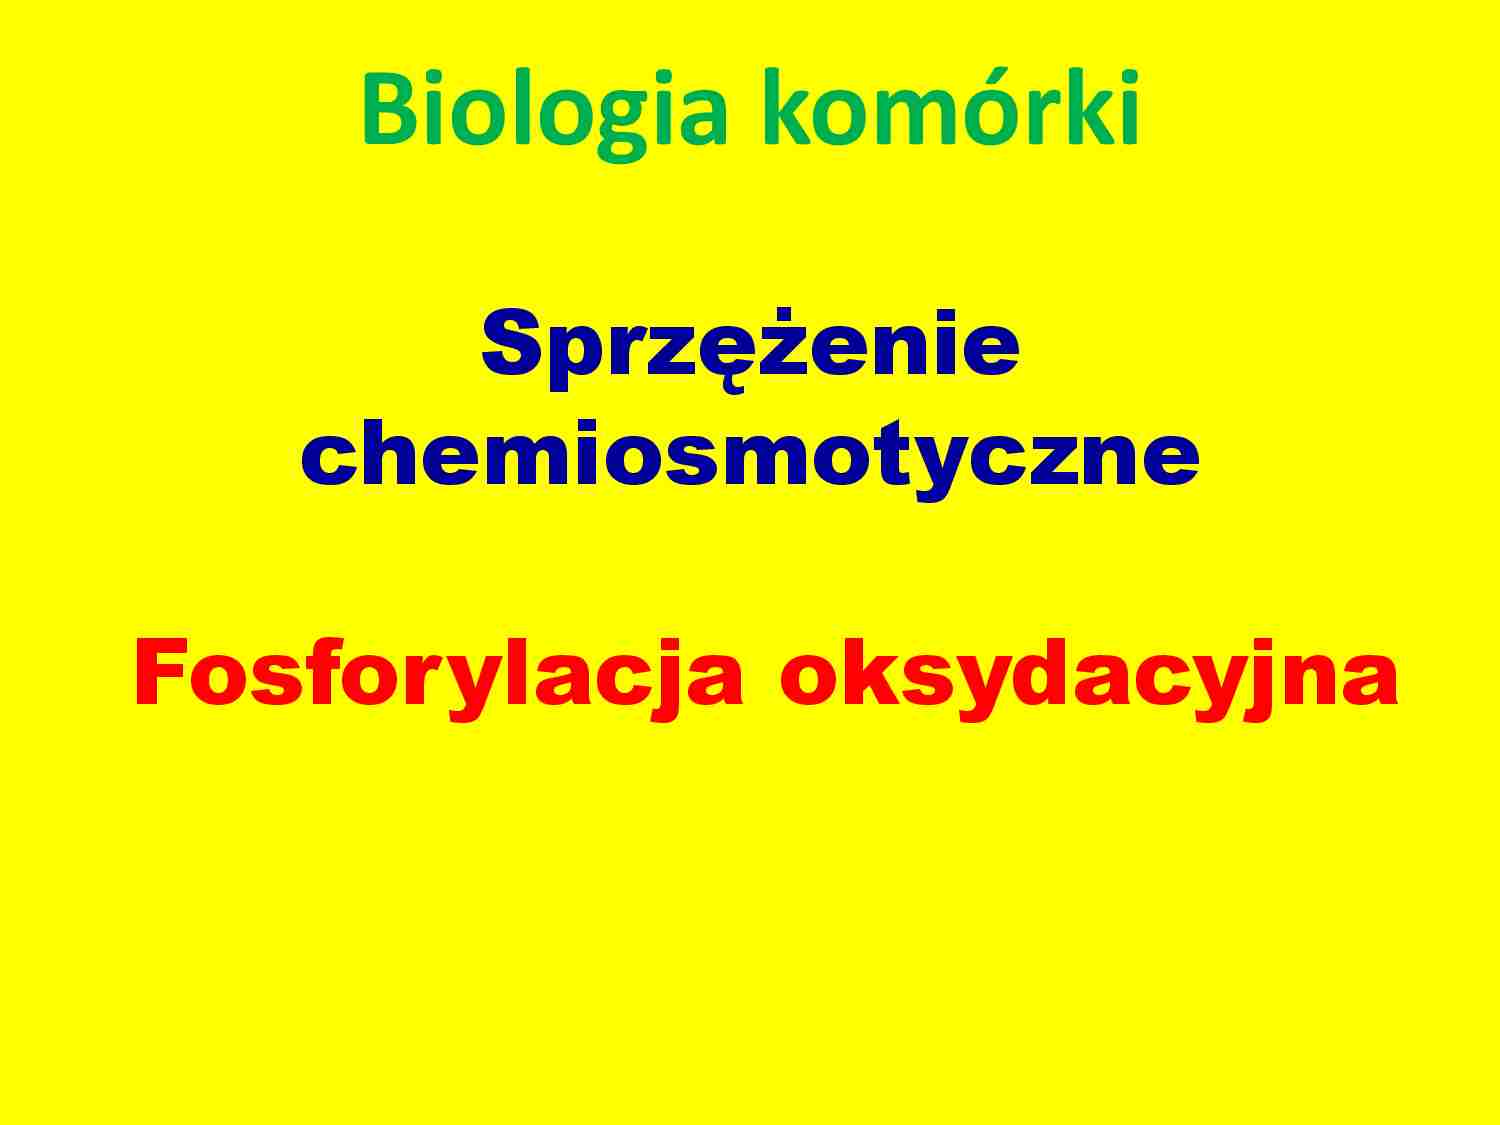 Fosforylacja oksydacyjna, sprzężenie chemiosmotyczne - strona 1